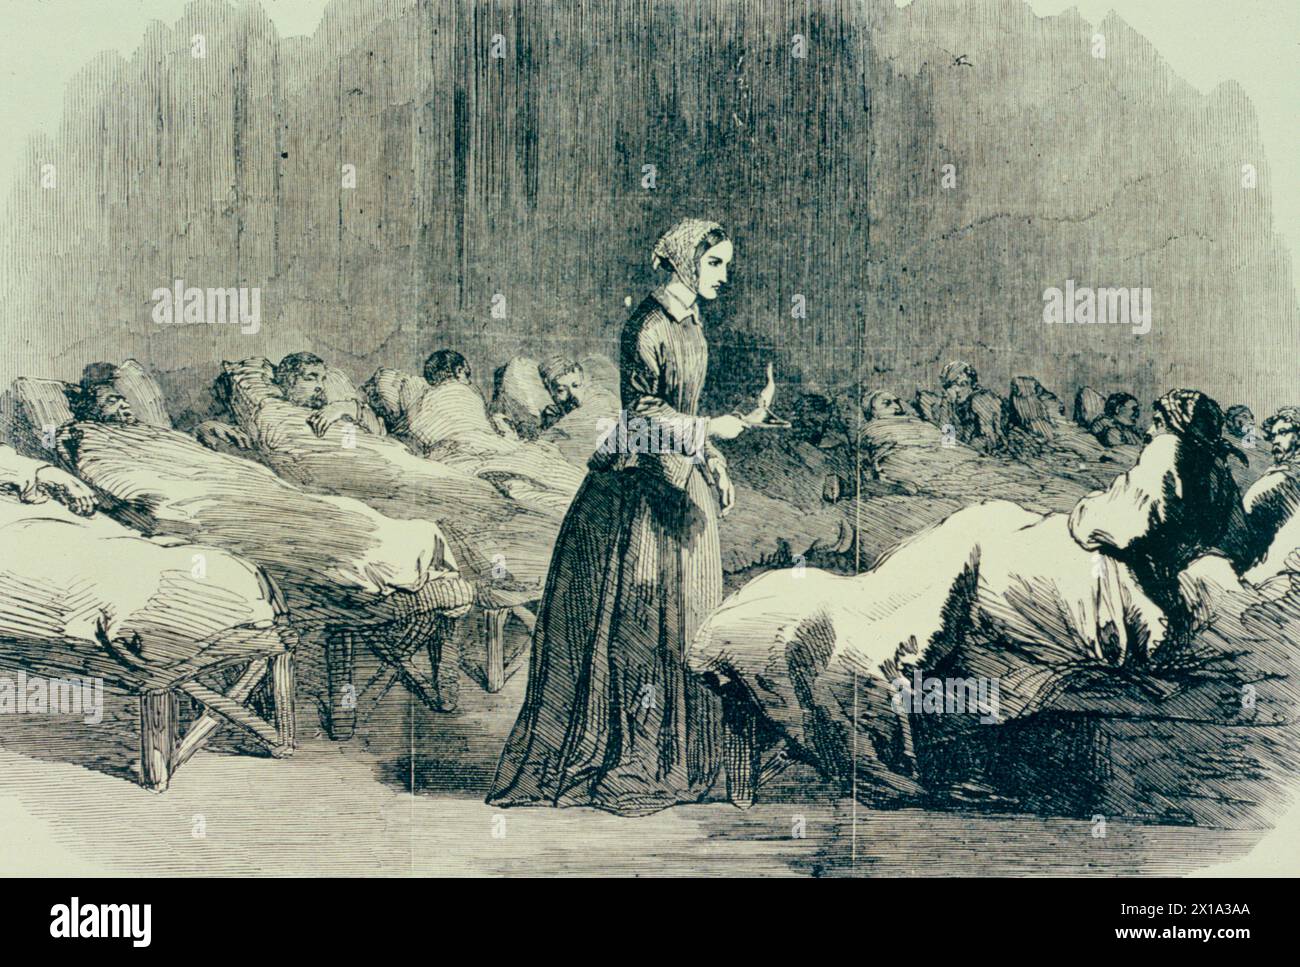 Florence Nightingale, fondatrice des soins infirmiers anglais, dans son hôpital militaire à Scutari pendant la guerre de Crimée, 1854 Banque D'Images